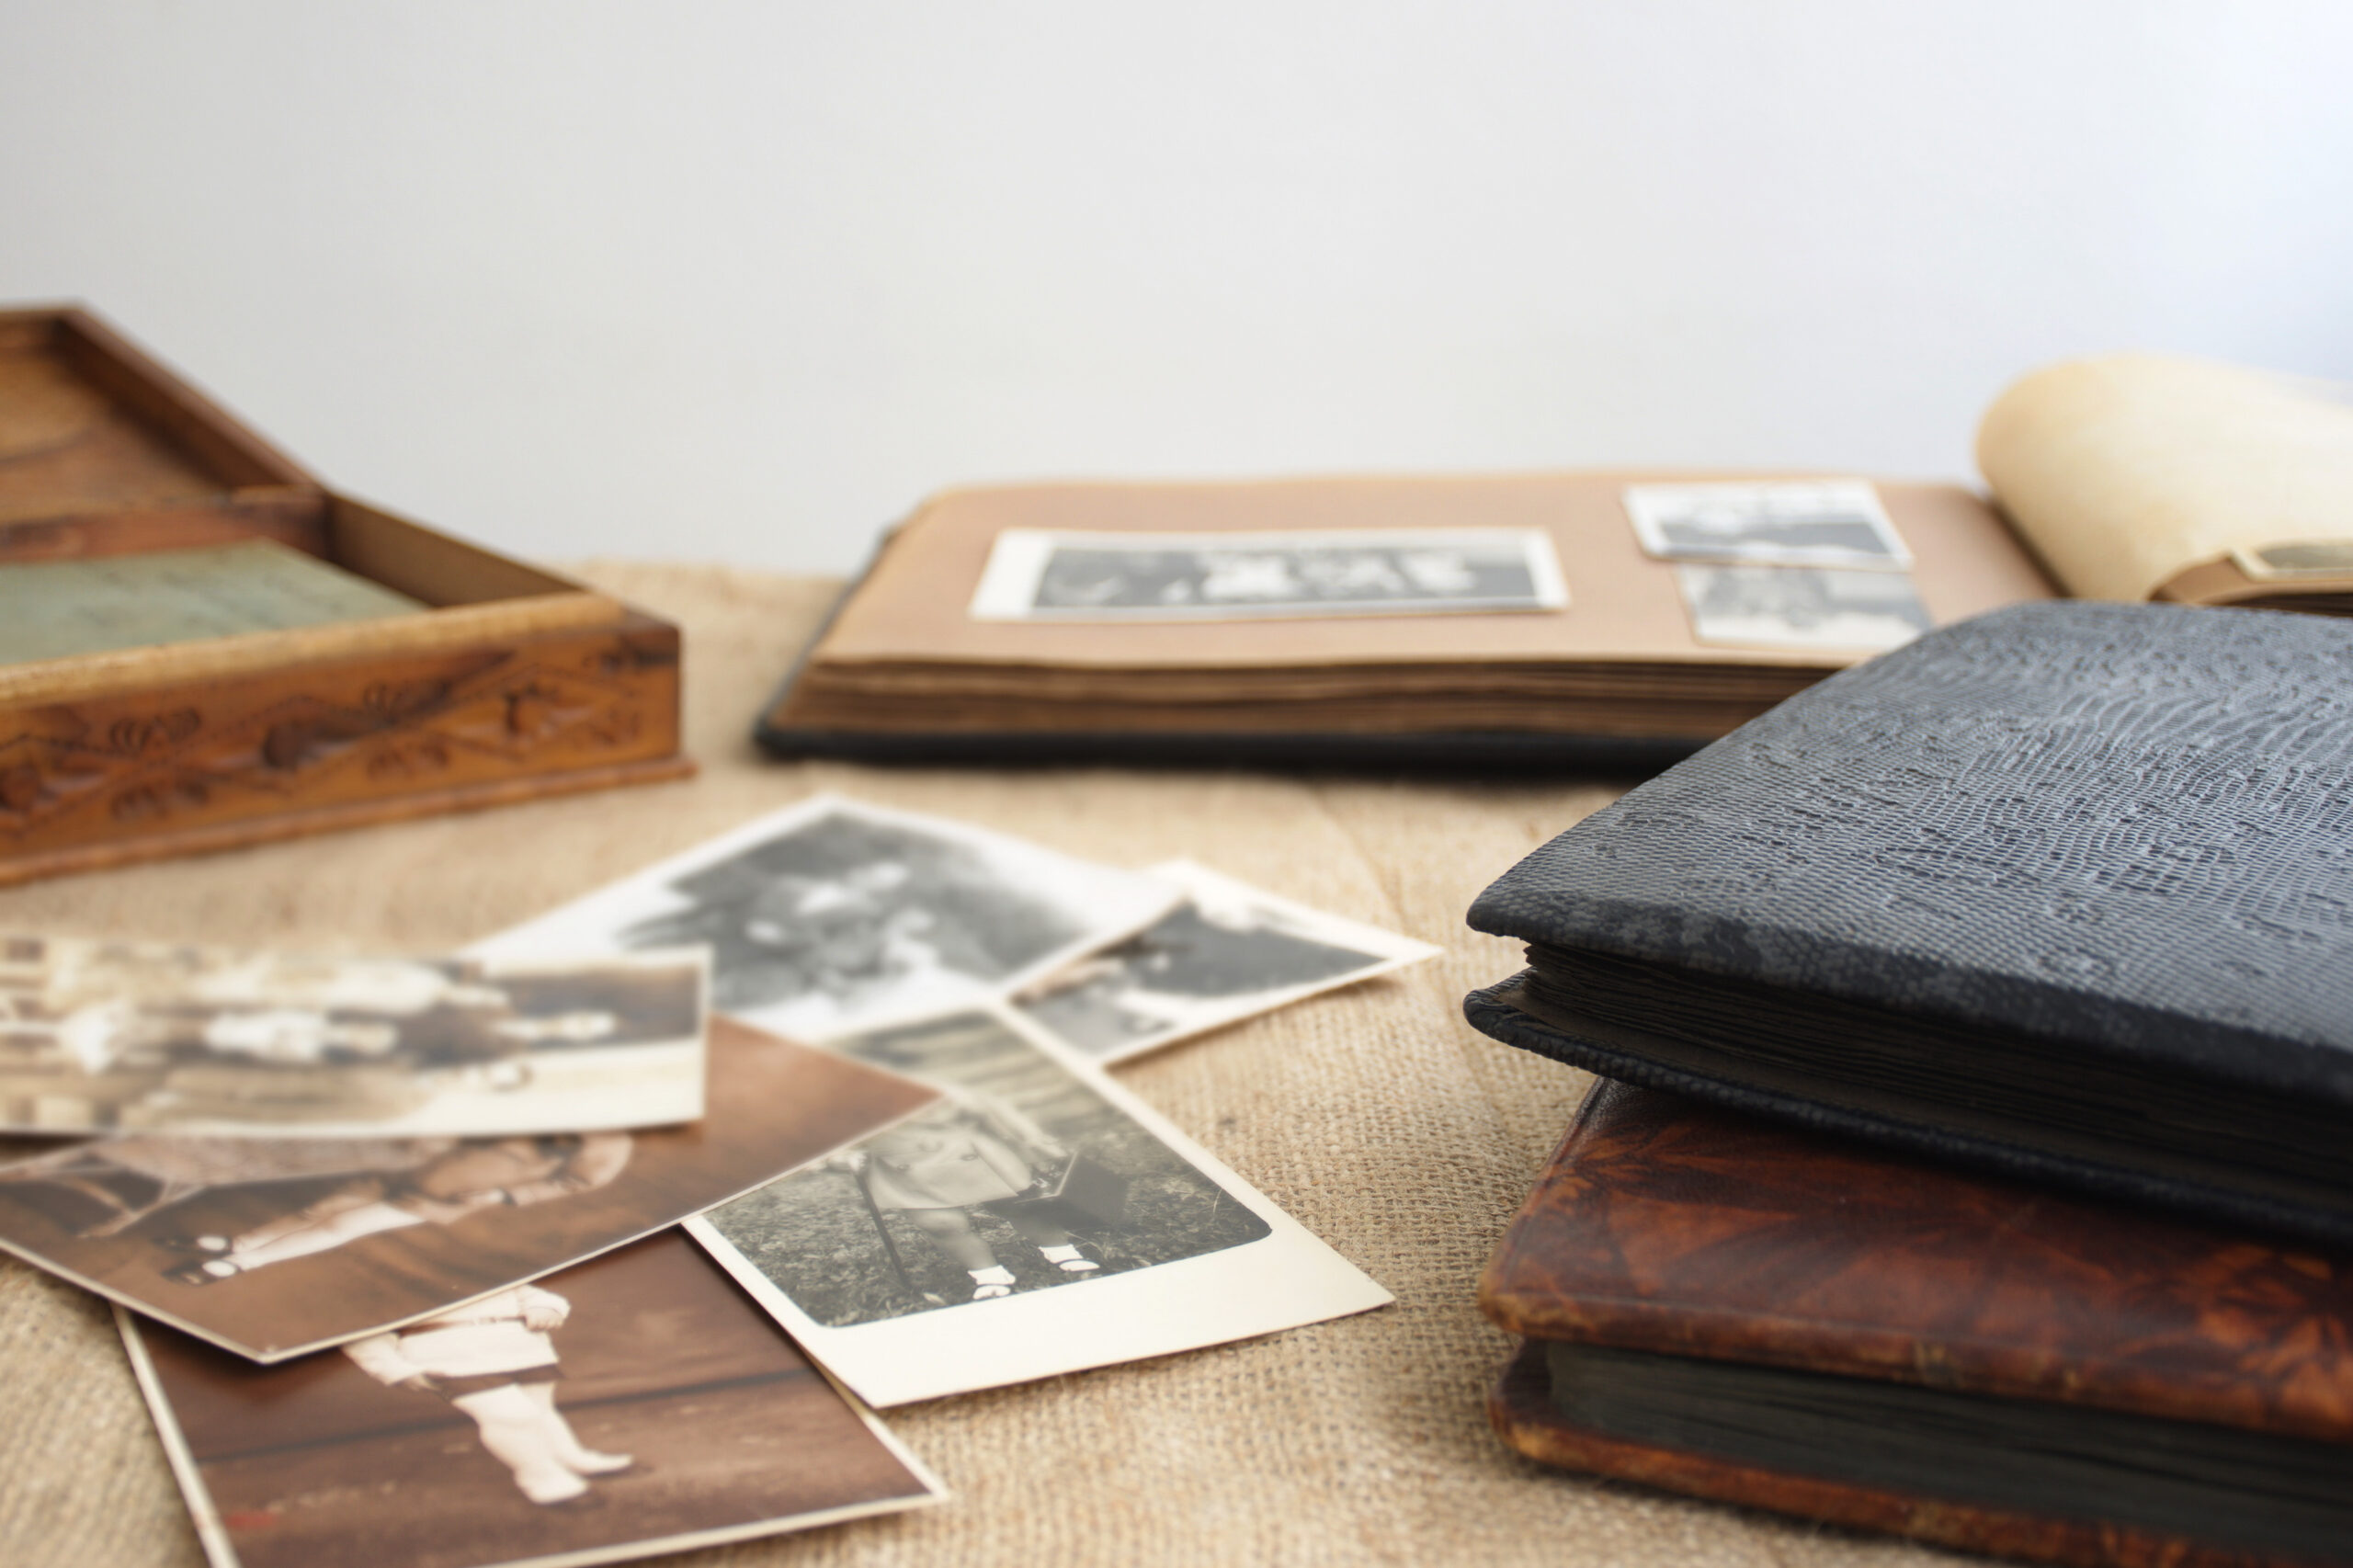 Vanhoja valokuva-albumeita, joissa on mustavalkoisia ja seepiansävyisiä kuvia.